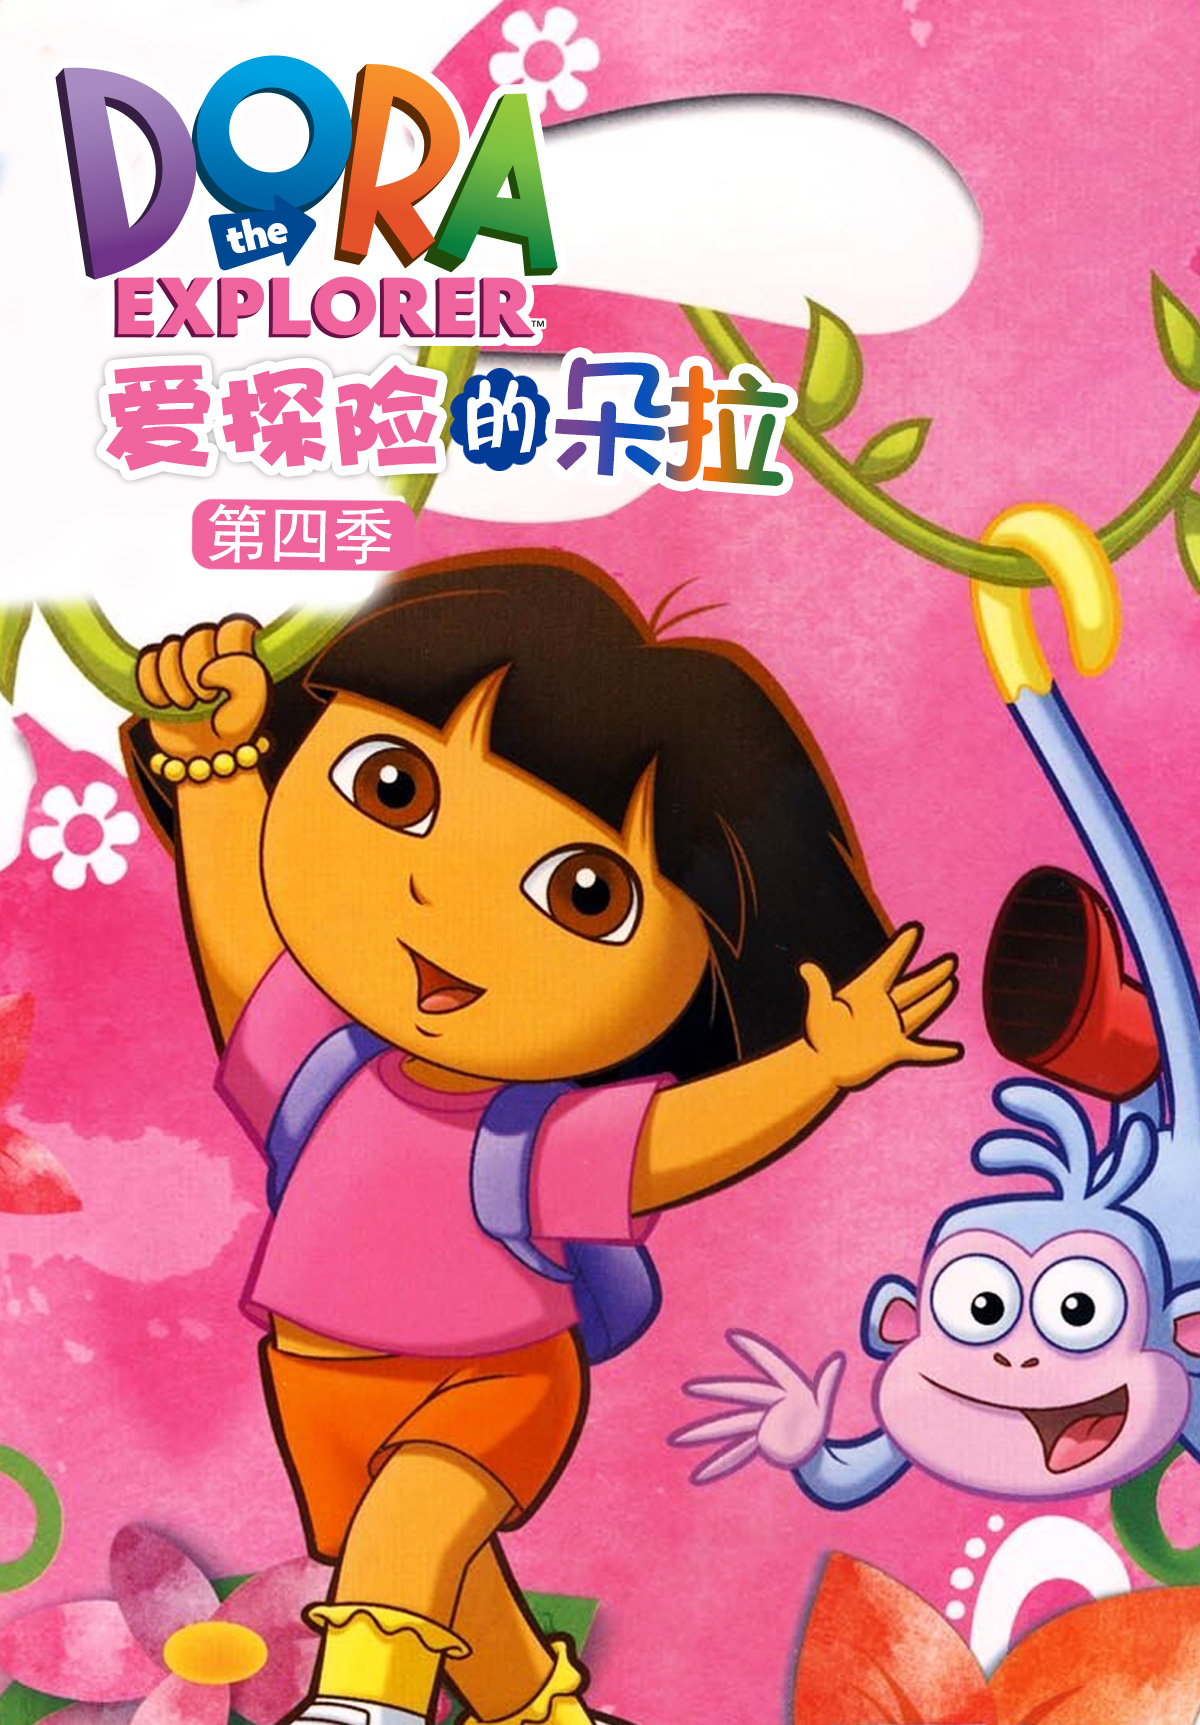 爱探险的朵拉Dora the explorer英文版动画片+音频MP3教学类英文-天天素材网